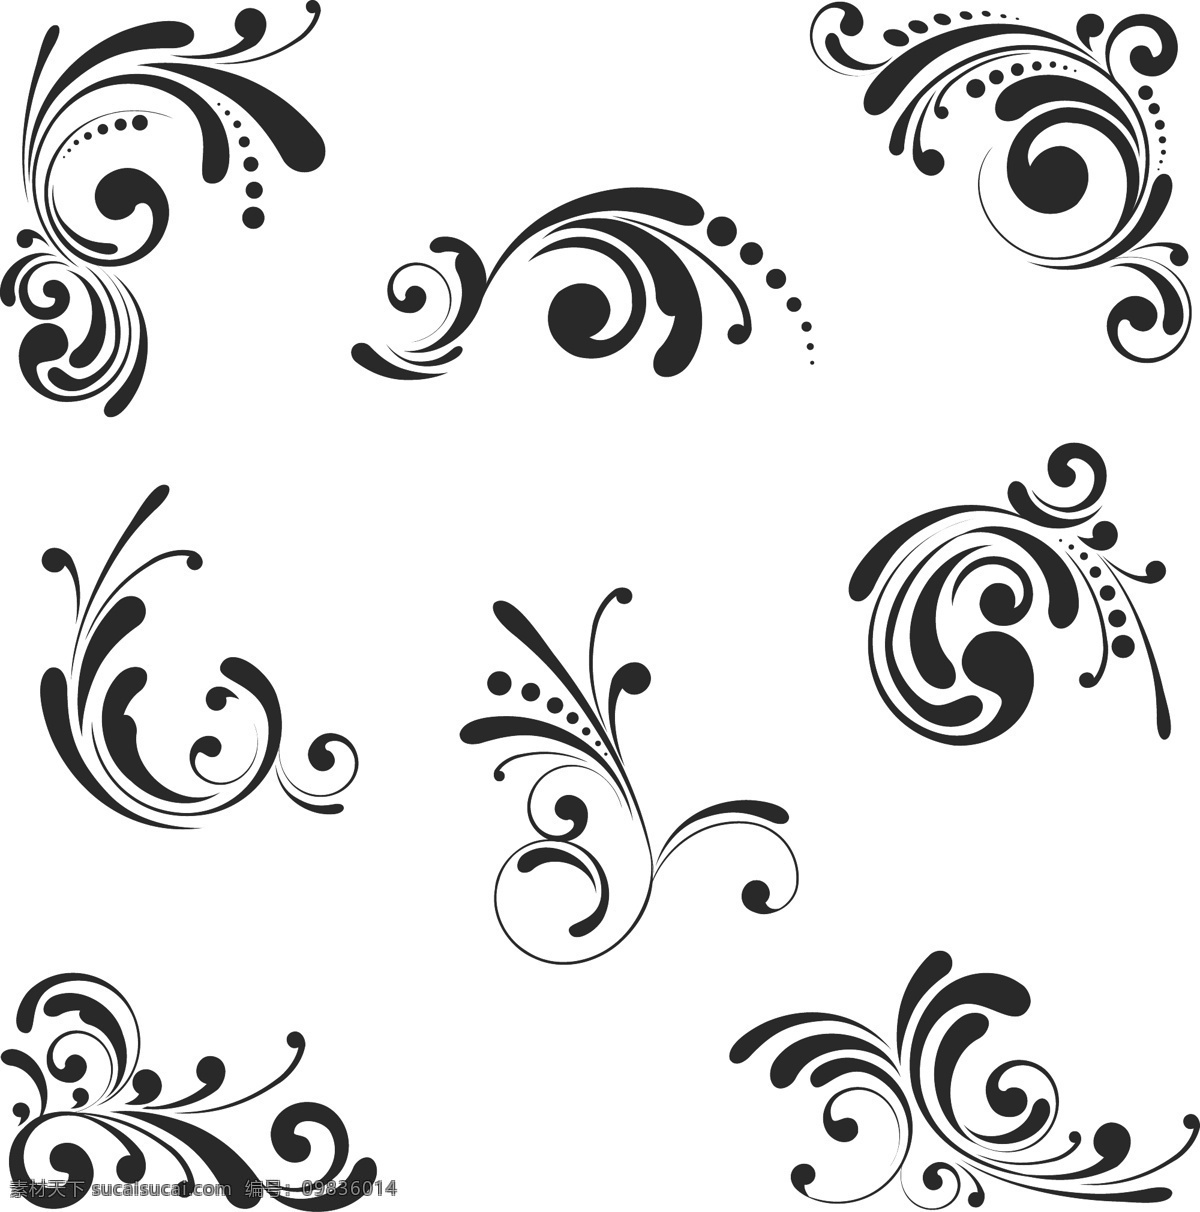 单色 装饰 花纹 单色花纹 花纹设计 花纹样式 模板 设计稿 设计图案 素材元素 装饰花纹 植物花纹 源文件 矢量图